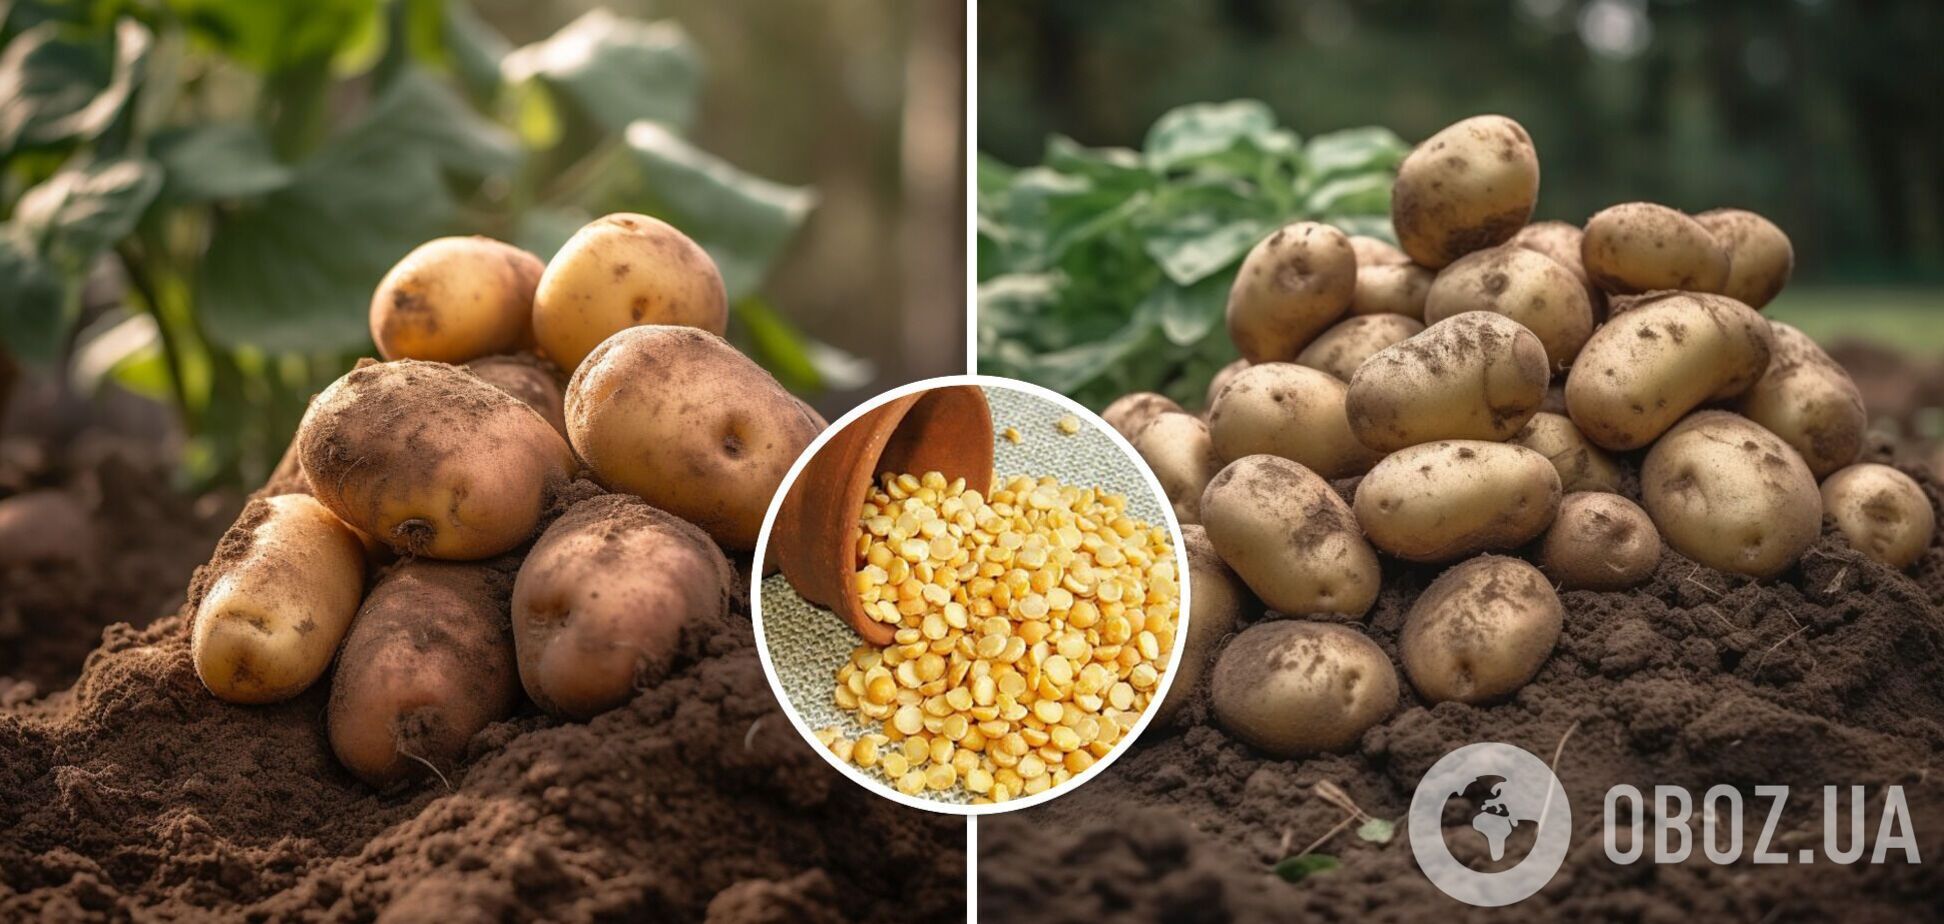 Картофеля будет больше, а жуков – меньше: дачная хитрость для увеличения урожая